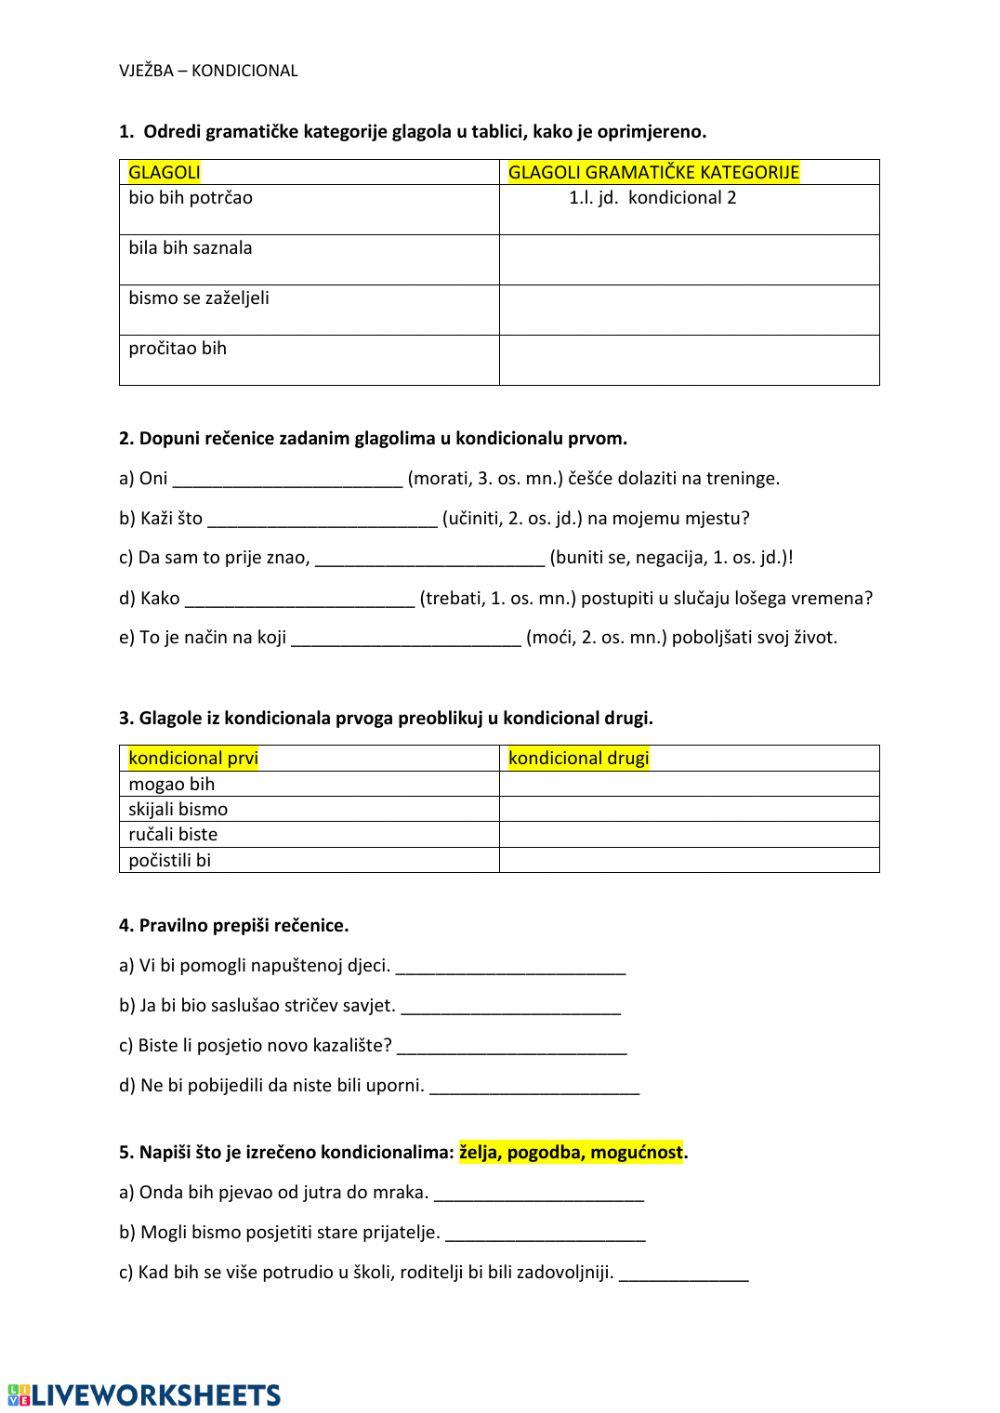 Kondicional 1,2 worksheet | Live Worksheets